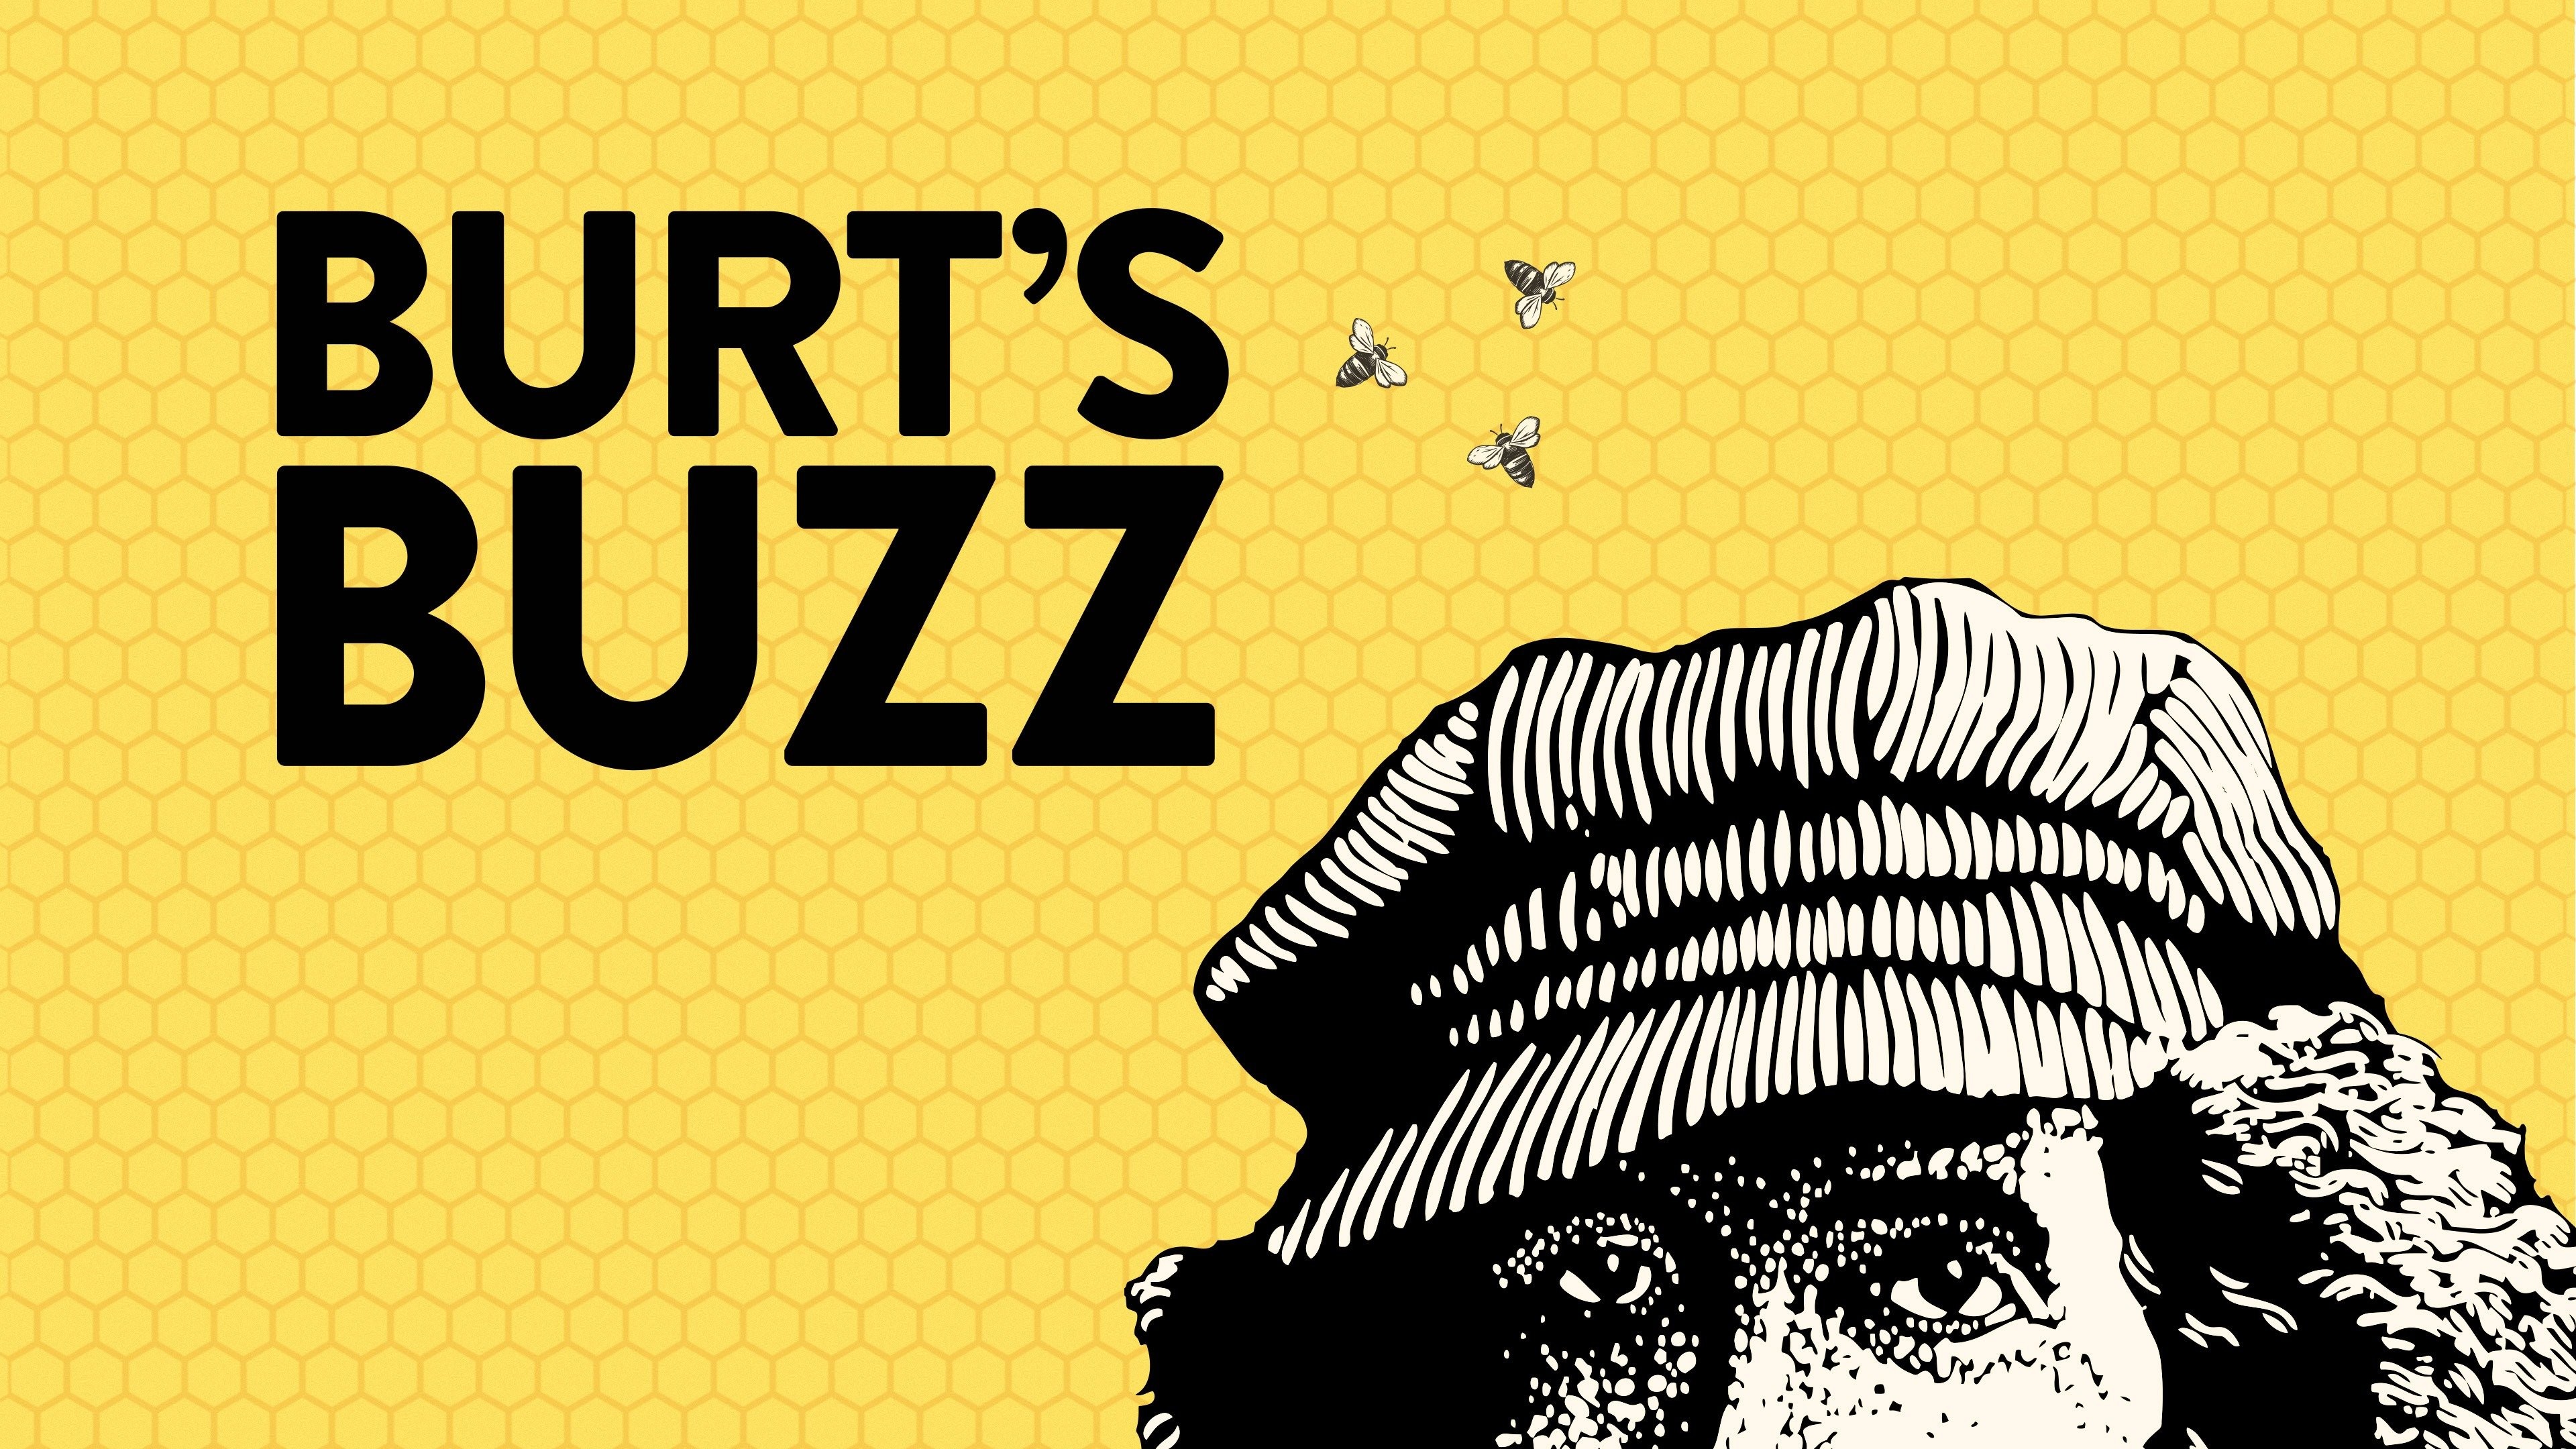 Burt's Bees Documentary